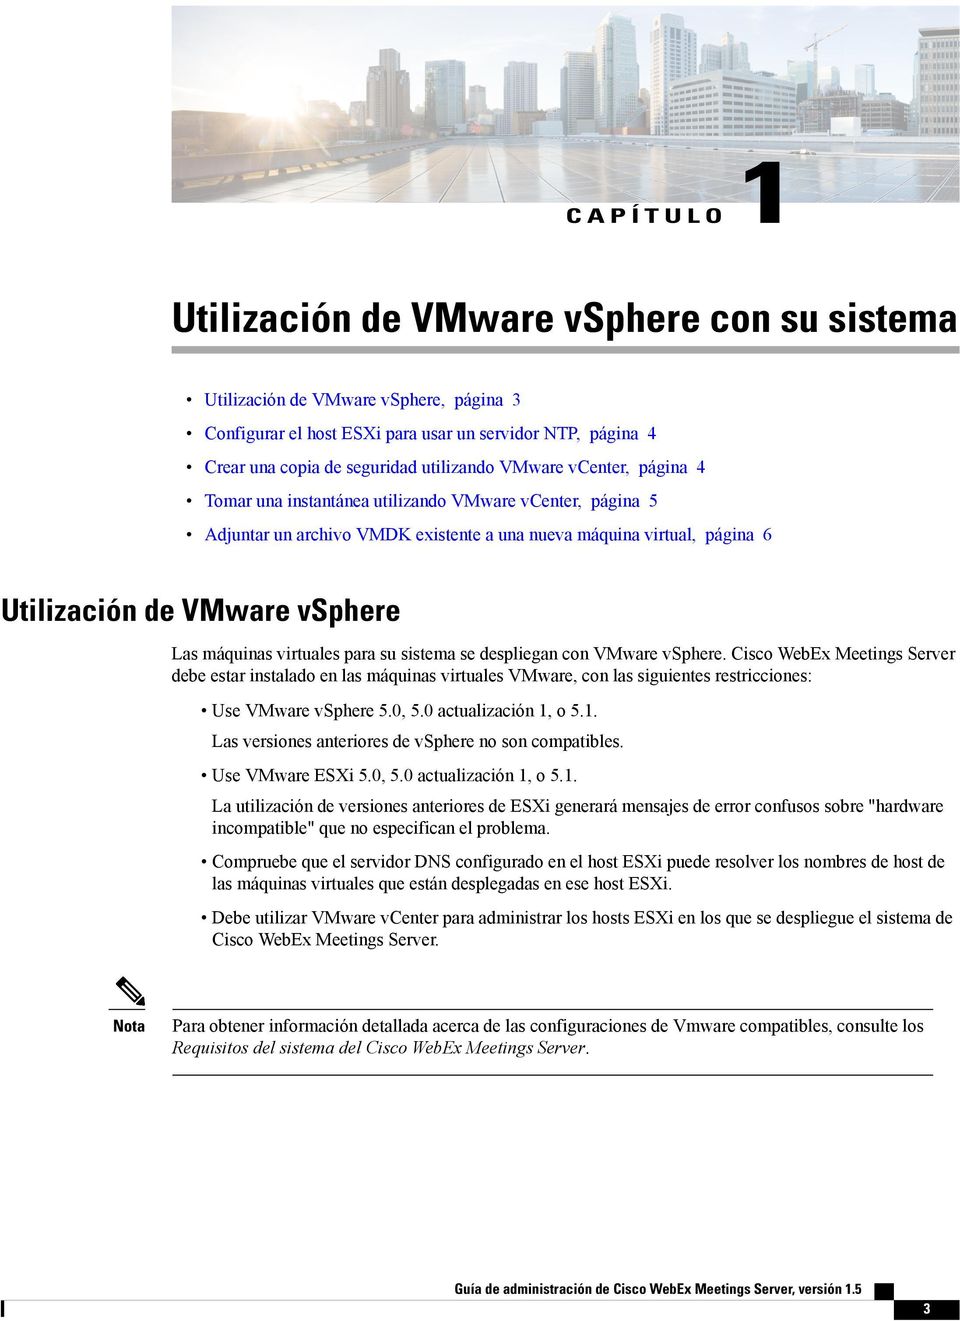 virtuales para su sistema se despliegan con VMware vsphere. Cisco WebEx Meetings Server debe estar instalado en las máquinas virtuales VMware, con las siguientes restricciones: Use VMware vsphere 5.